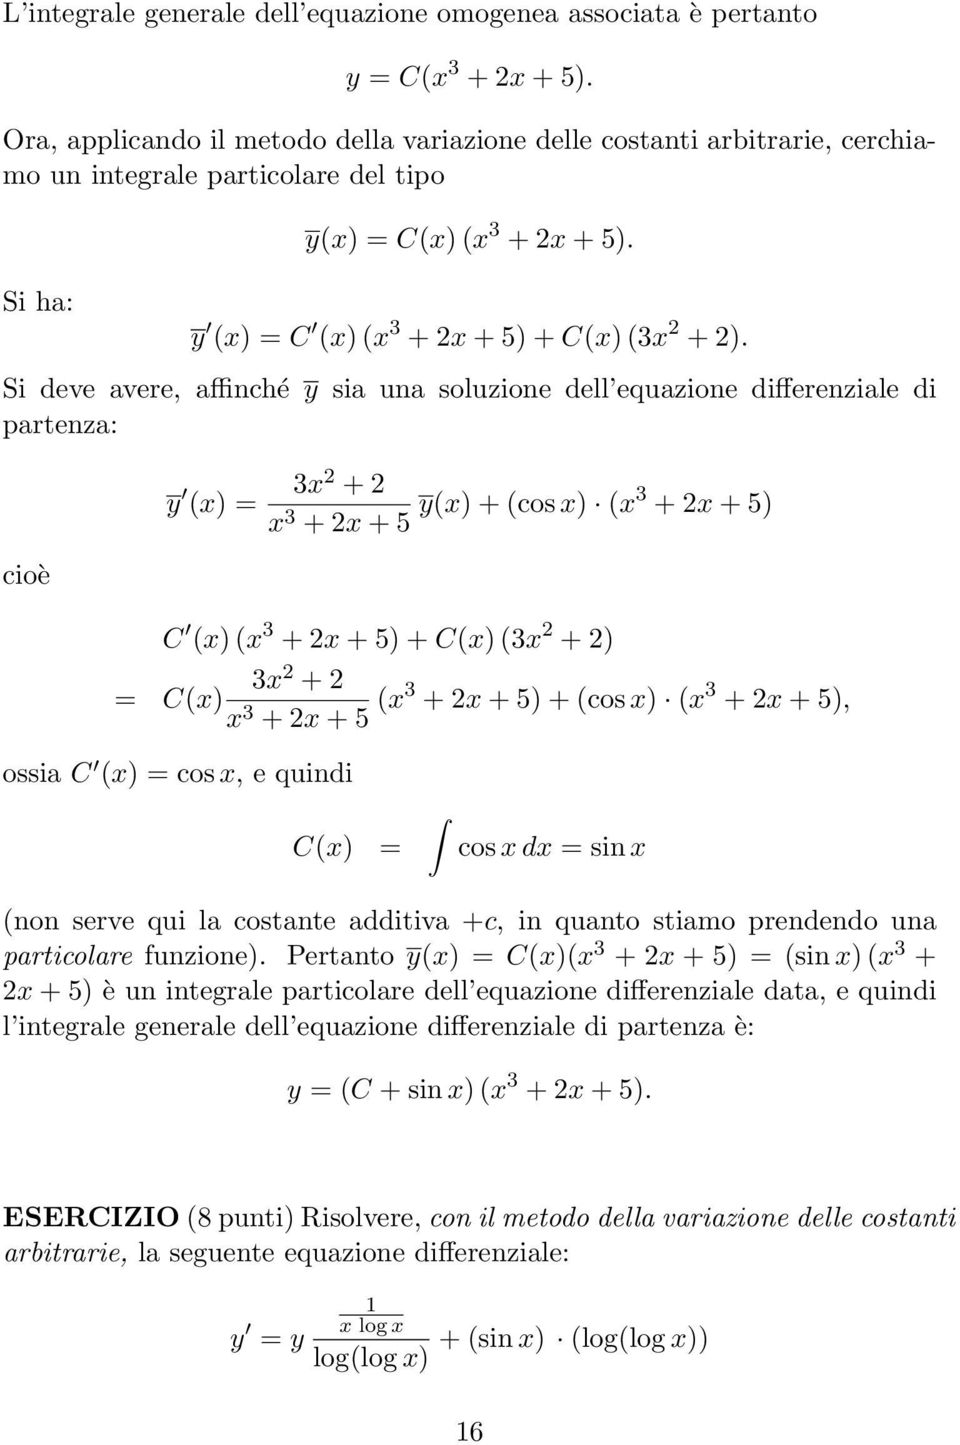 5 y(x) + (cos x) (x3 + 2x + 5) C (x) (x 3 + 2x + 5) + C(x) (3x 2 + 2) 3x 2 + 2 = C(x) x 3 + 2x + 5 (x3 + 2x + 5) + (cos x) (x 3 + 2x + 5), ossia C (x) = cos x, e quindi C(x) = cos x dx = sin x (non